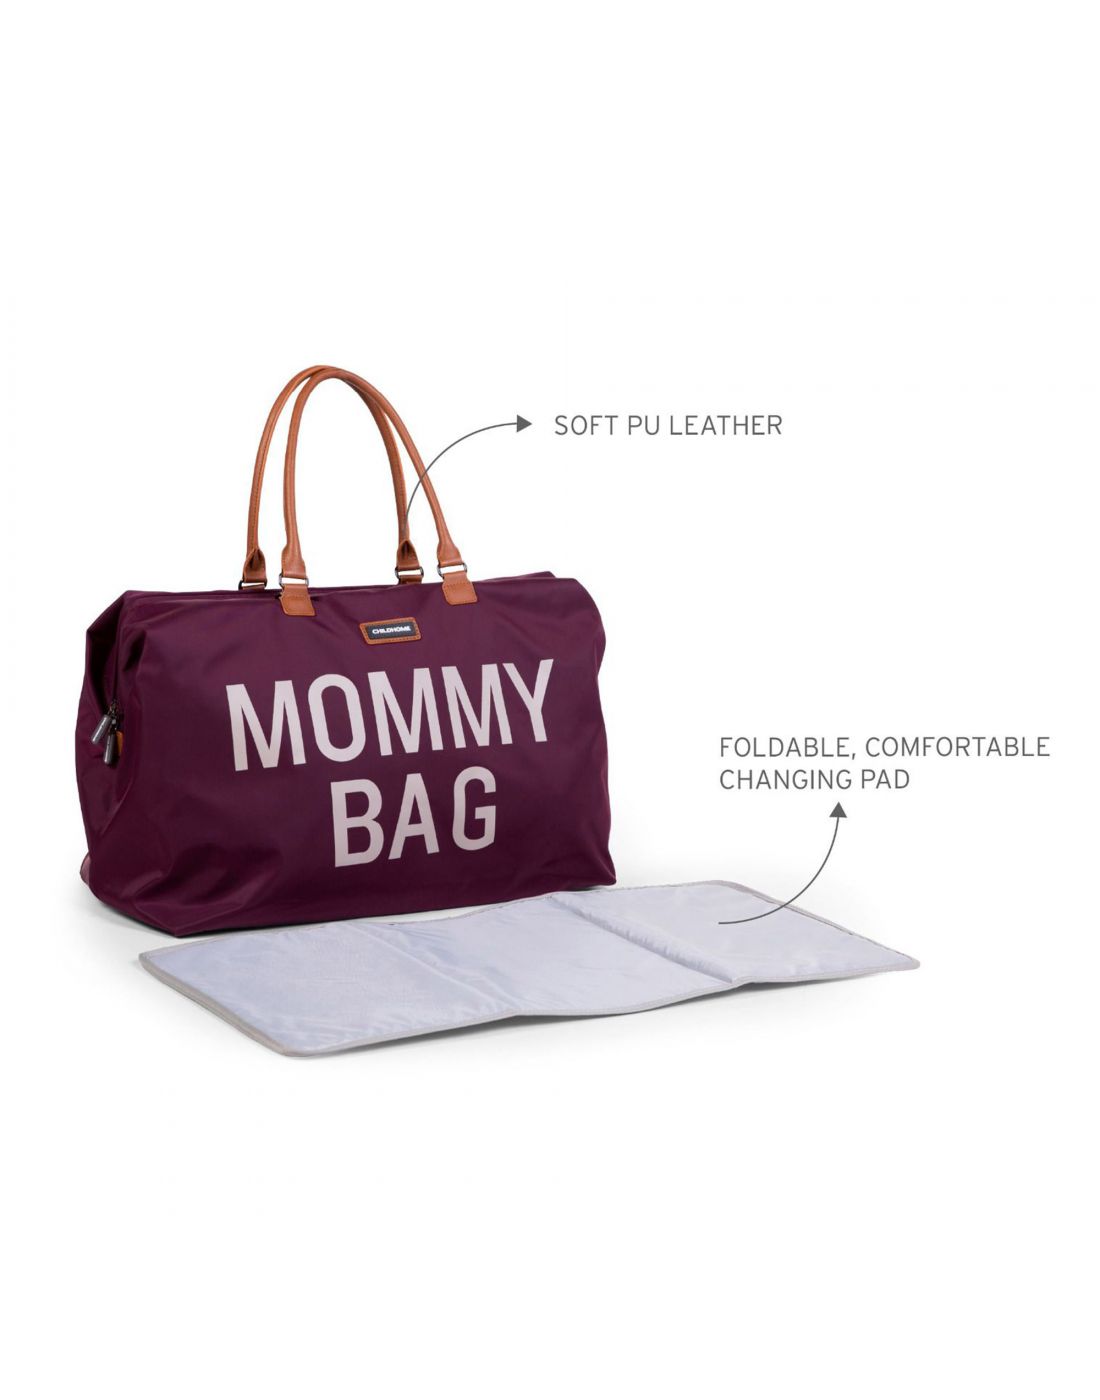 Τσάντα αλλαγής Childhome Mommy Bag Aubergine